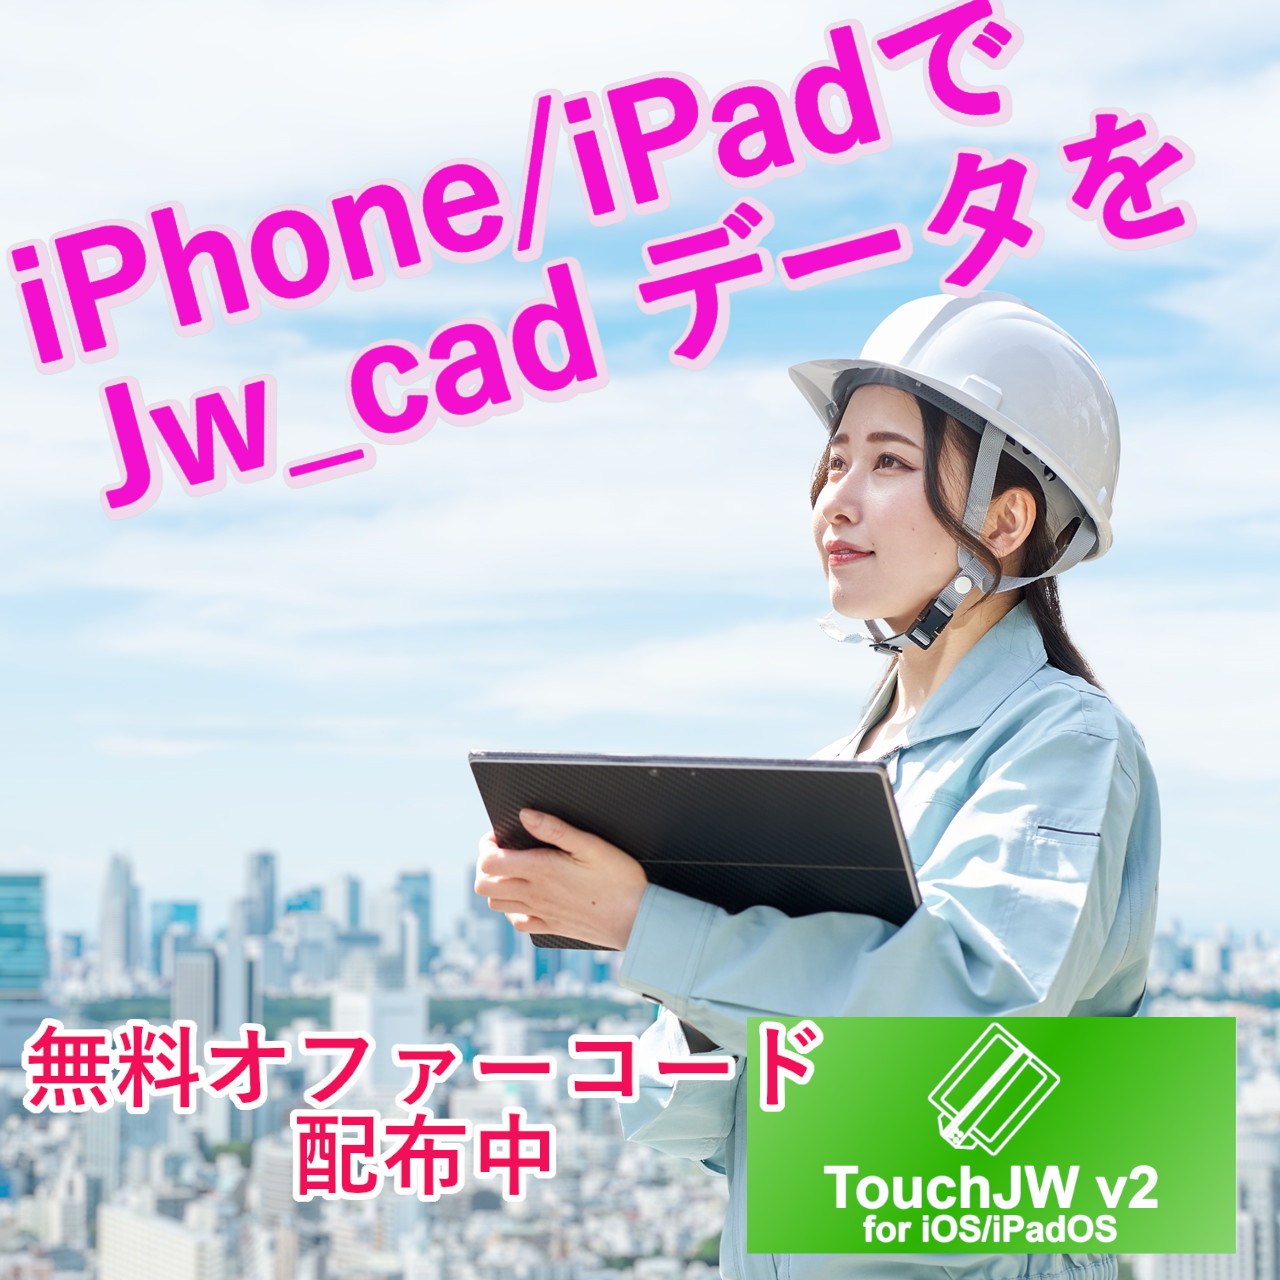 iPadでJw_cadデータを!